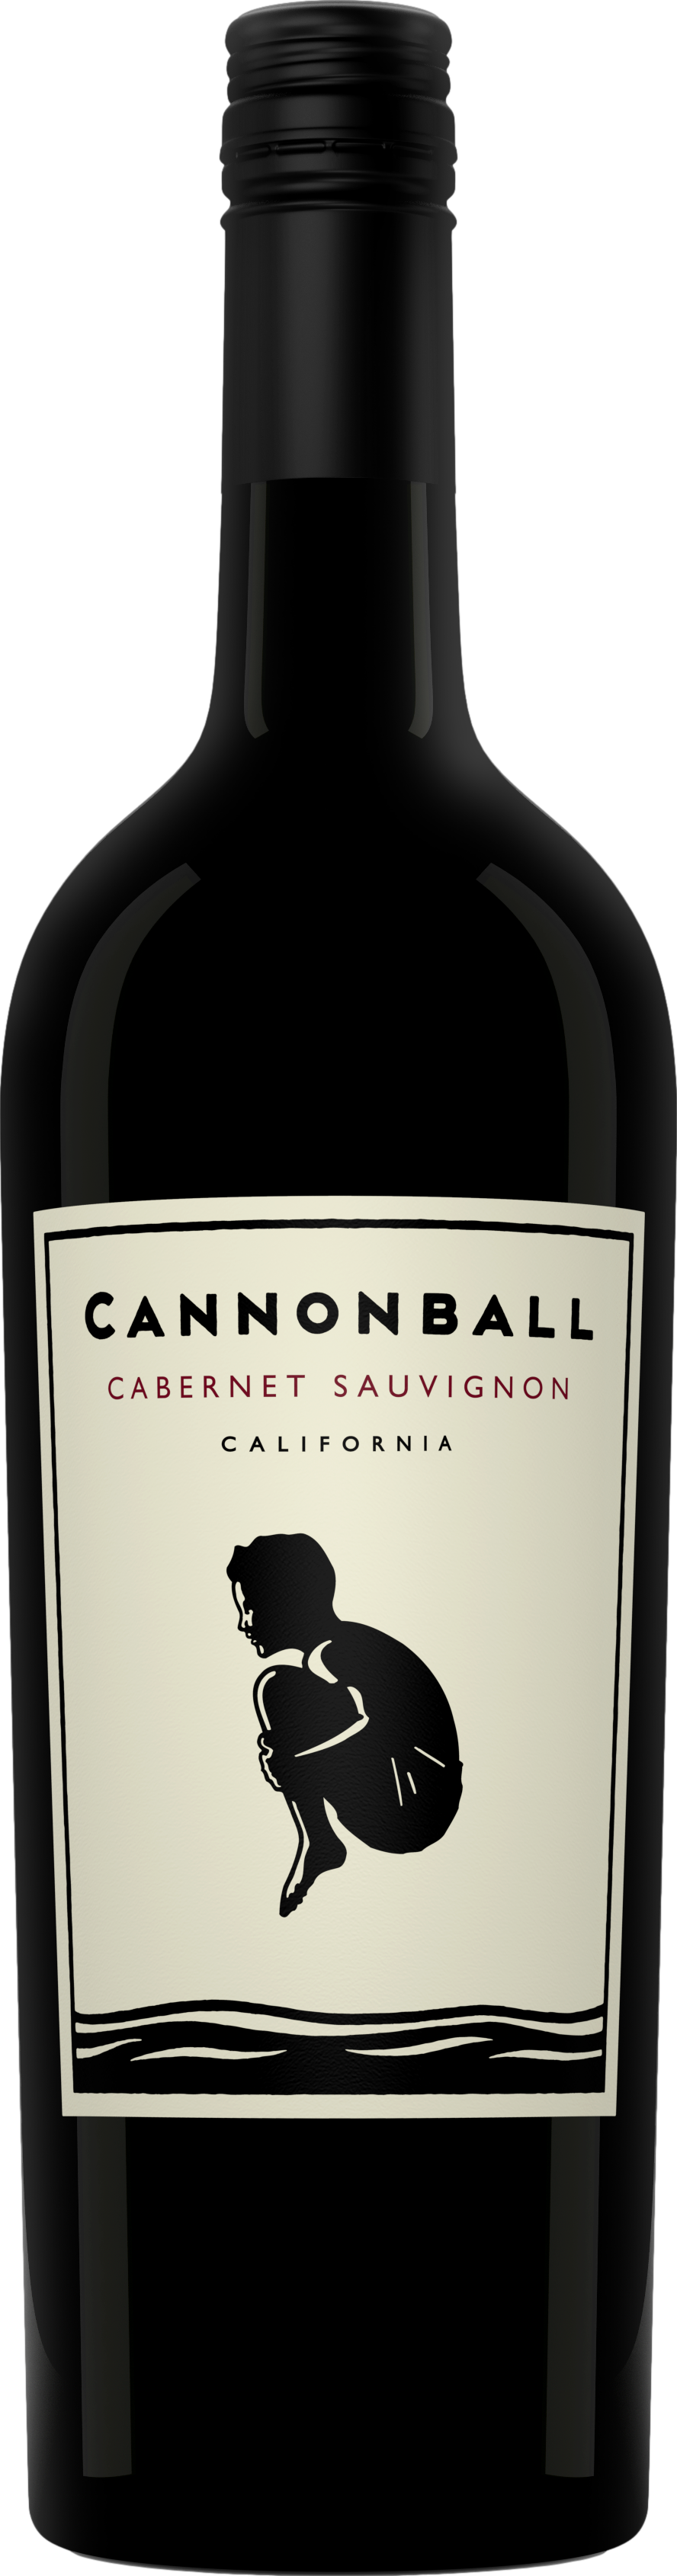 Cannonball Cabernet Sauvignon 2018